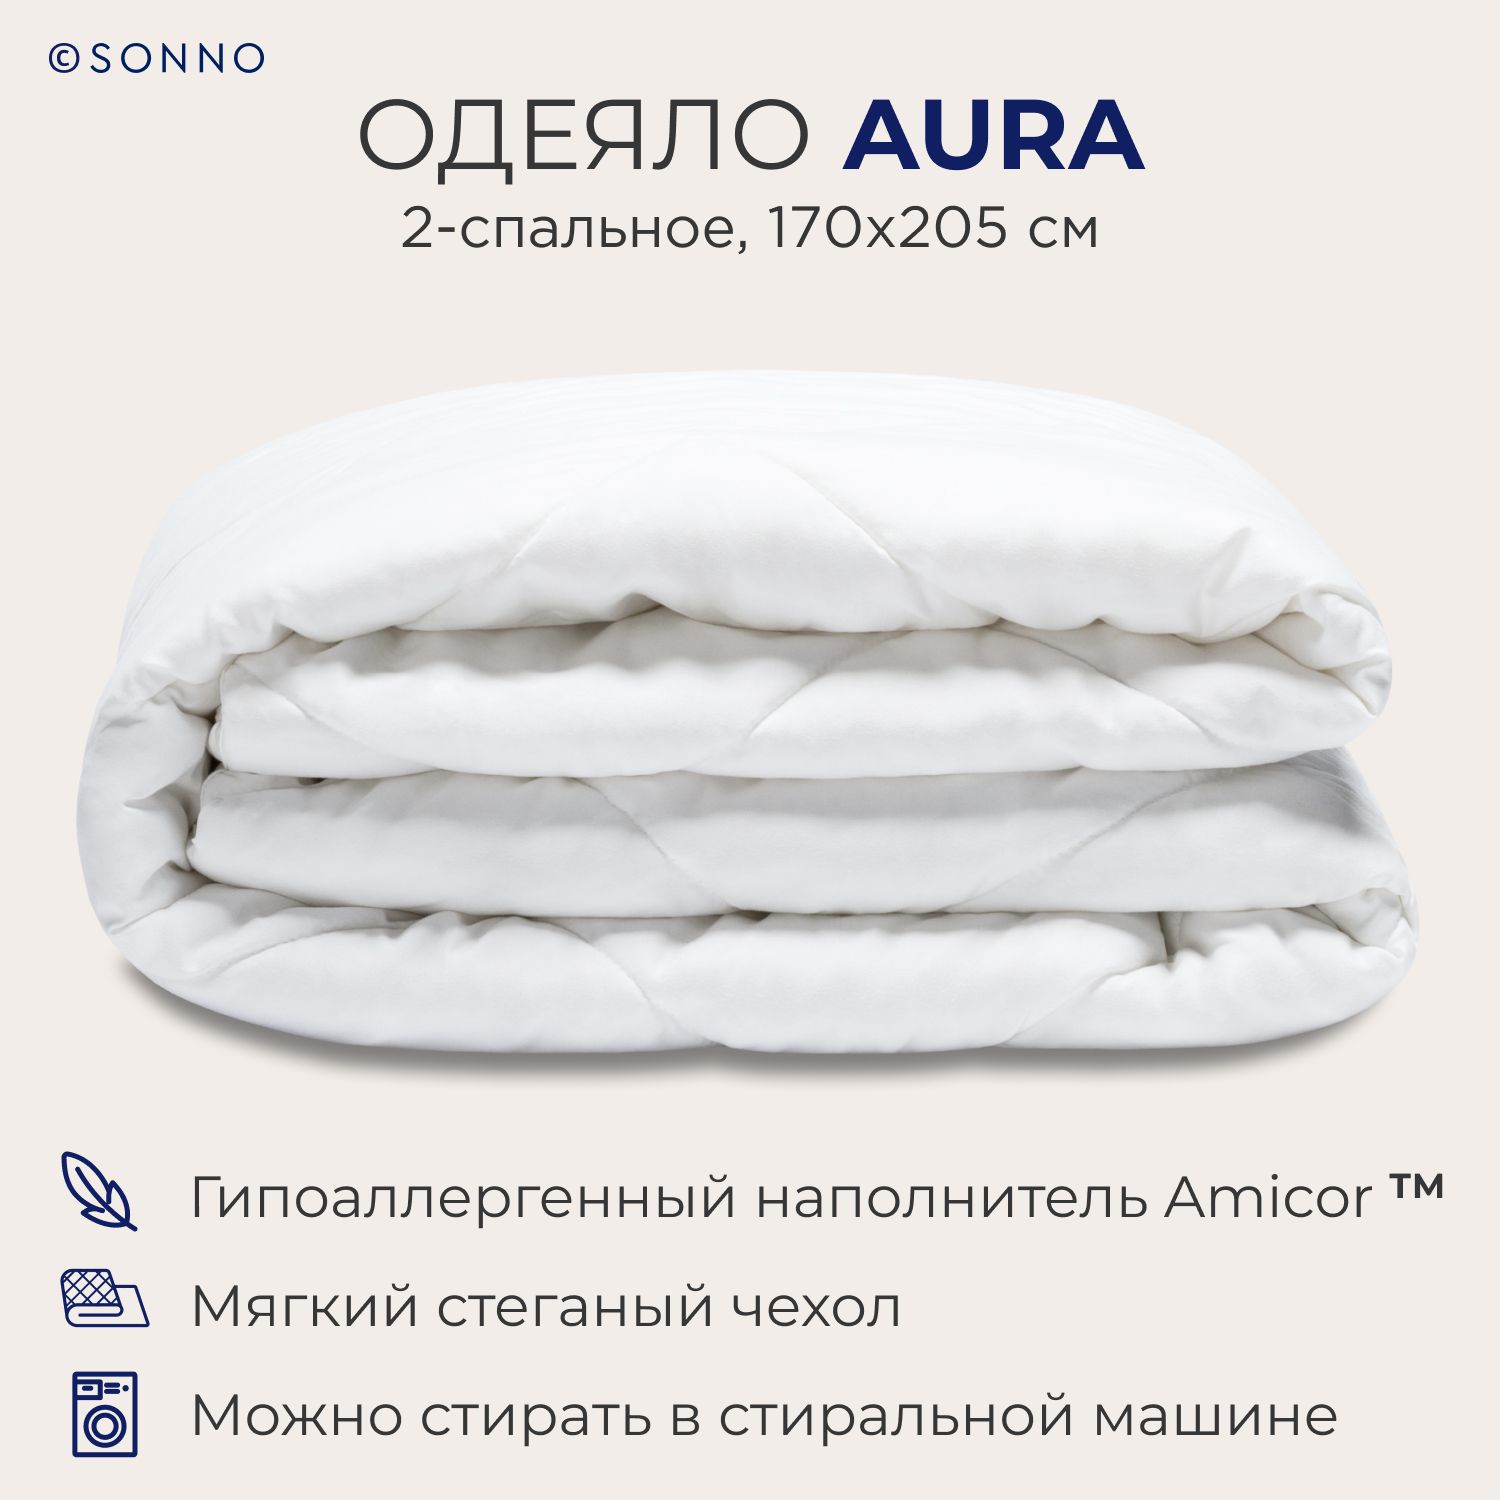 Одеяло SONNO AURA 2-спальное, 170х205 см, всесезонное, стеганое, цвет Ослепительно белый